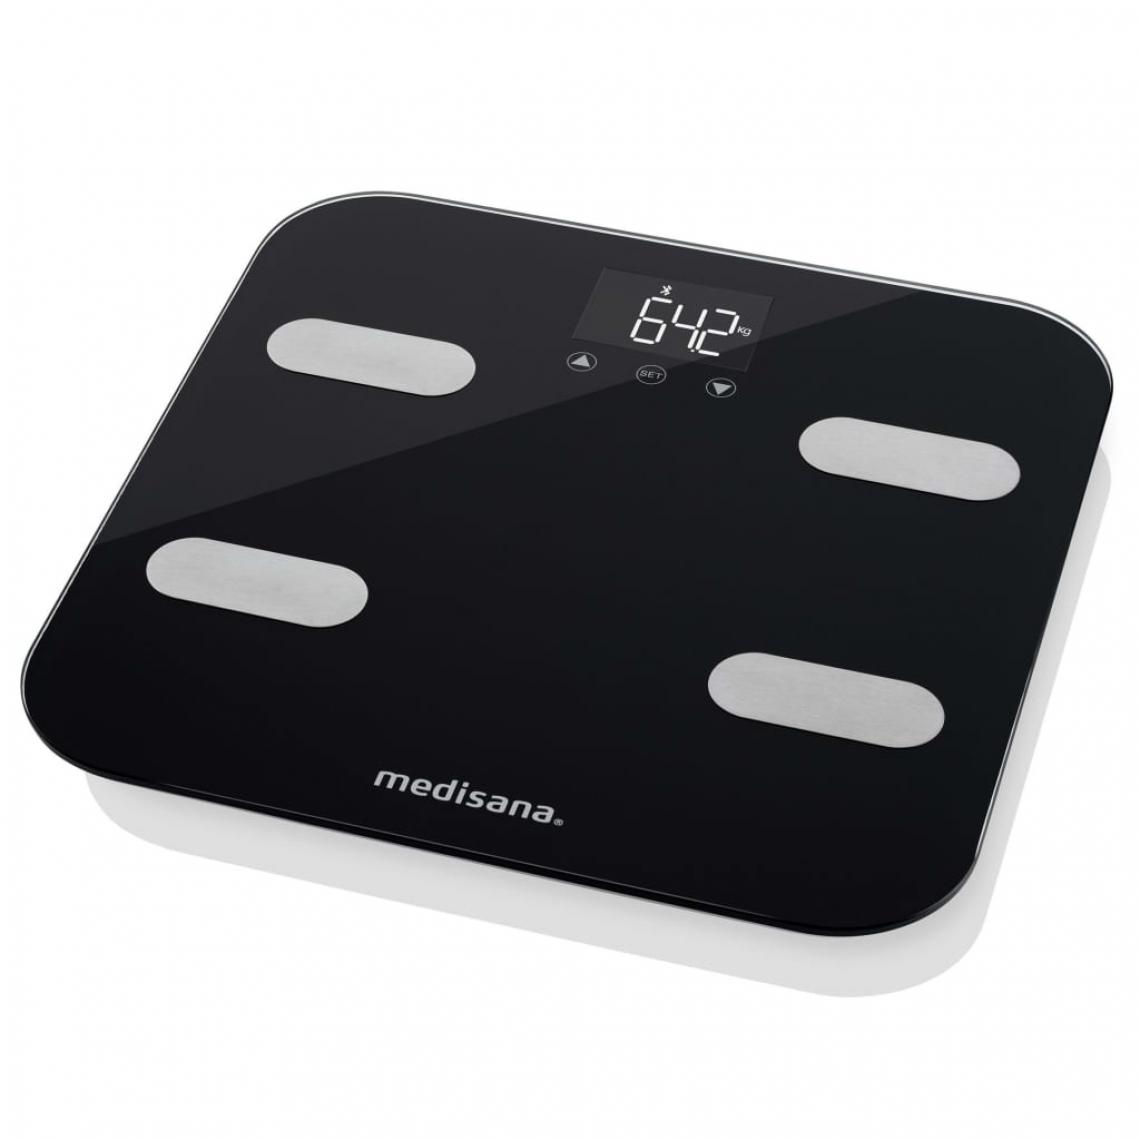 Medisana - Medisana Pèse-personne BS 602 Connect Wi-Fi et Bluetooth - Pèse-personne